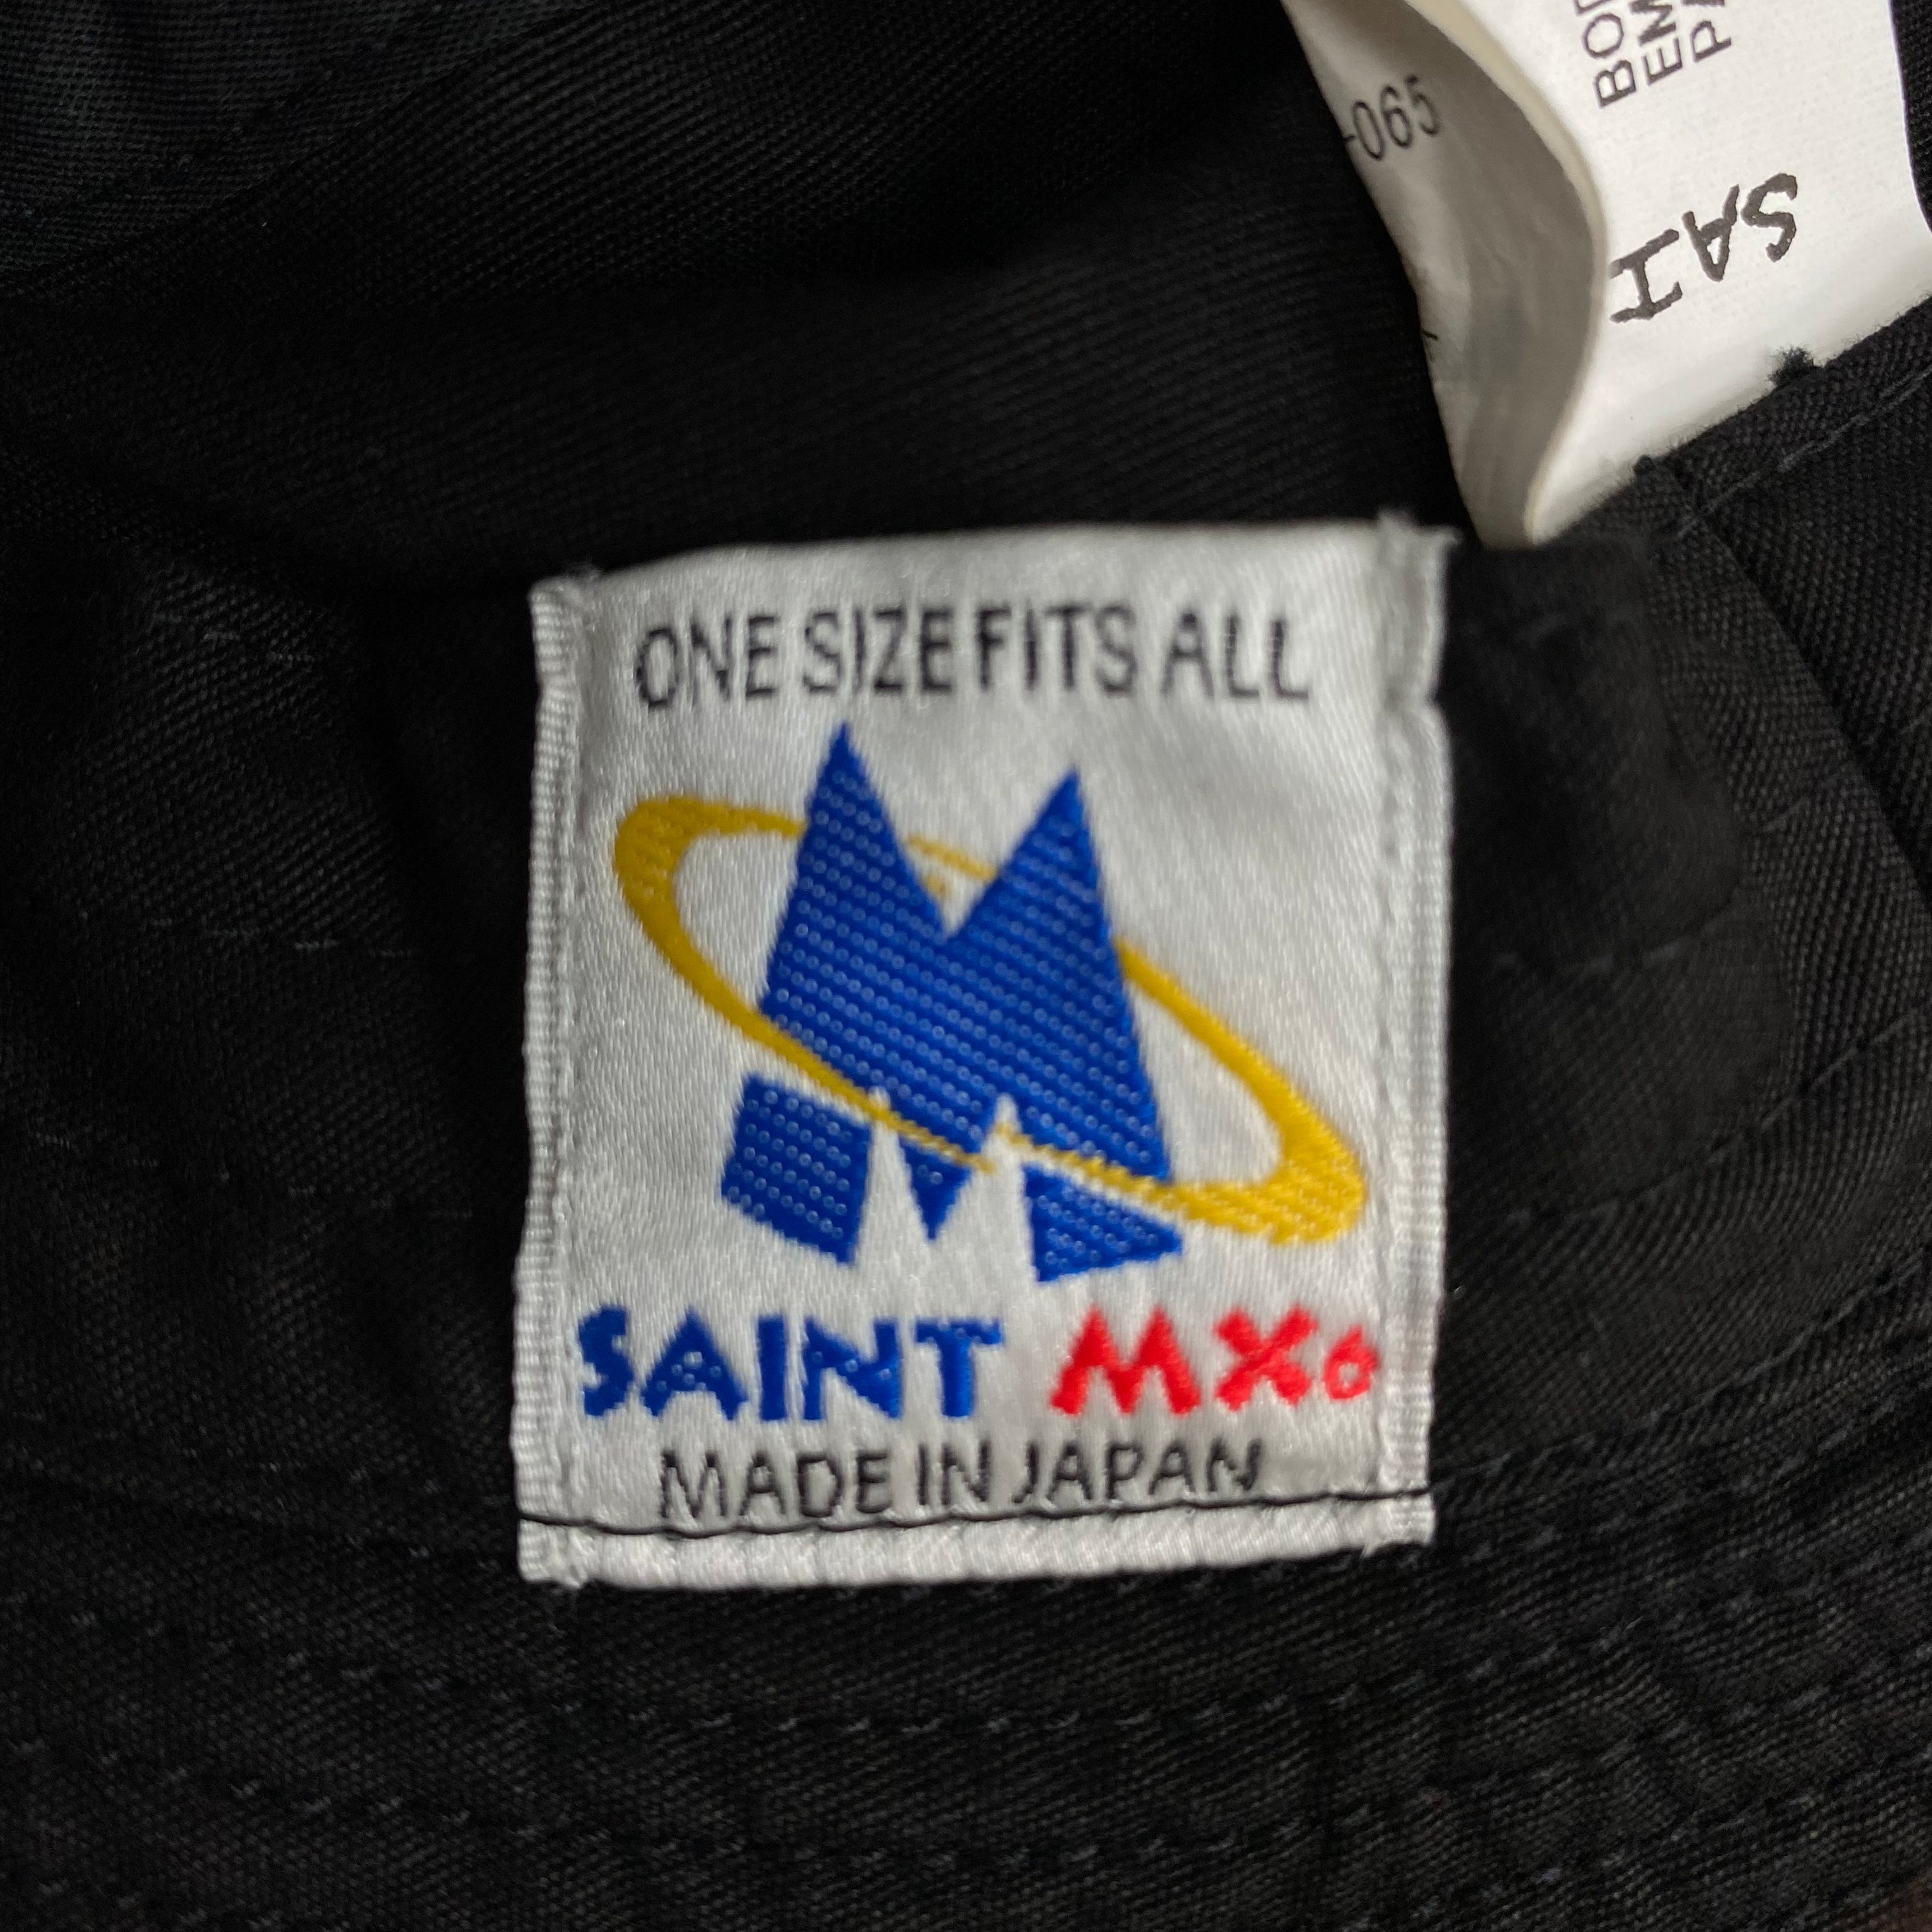 [ FINAL ONE ! ] SAINT MICHAEL BUCKET HAT " SAINT " / Saint Michael